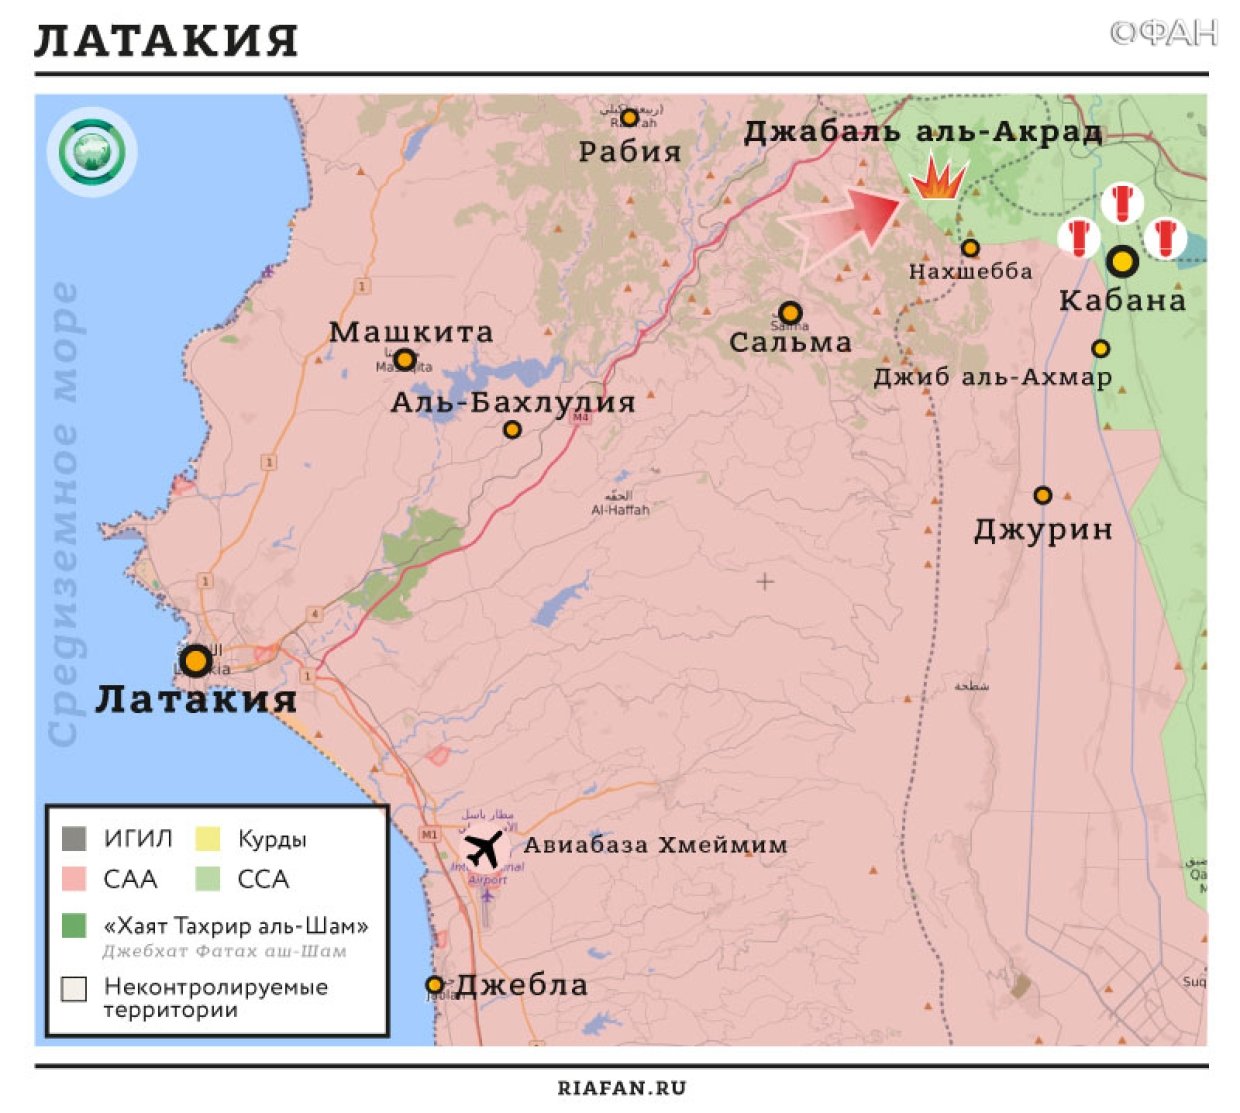 Сирия новости 24 октября 07.00: США могут перебросить боевиков из Ат-Танфа в Дейр-эз-Зор; в Идлибе продолжается противостояние группировок